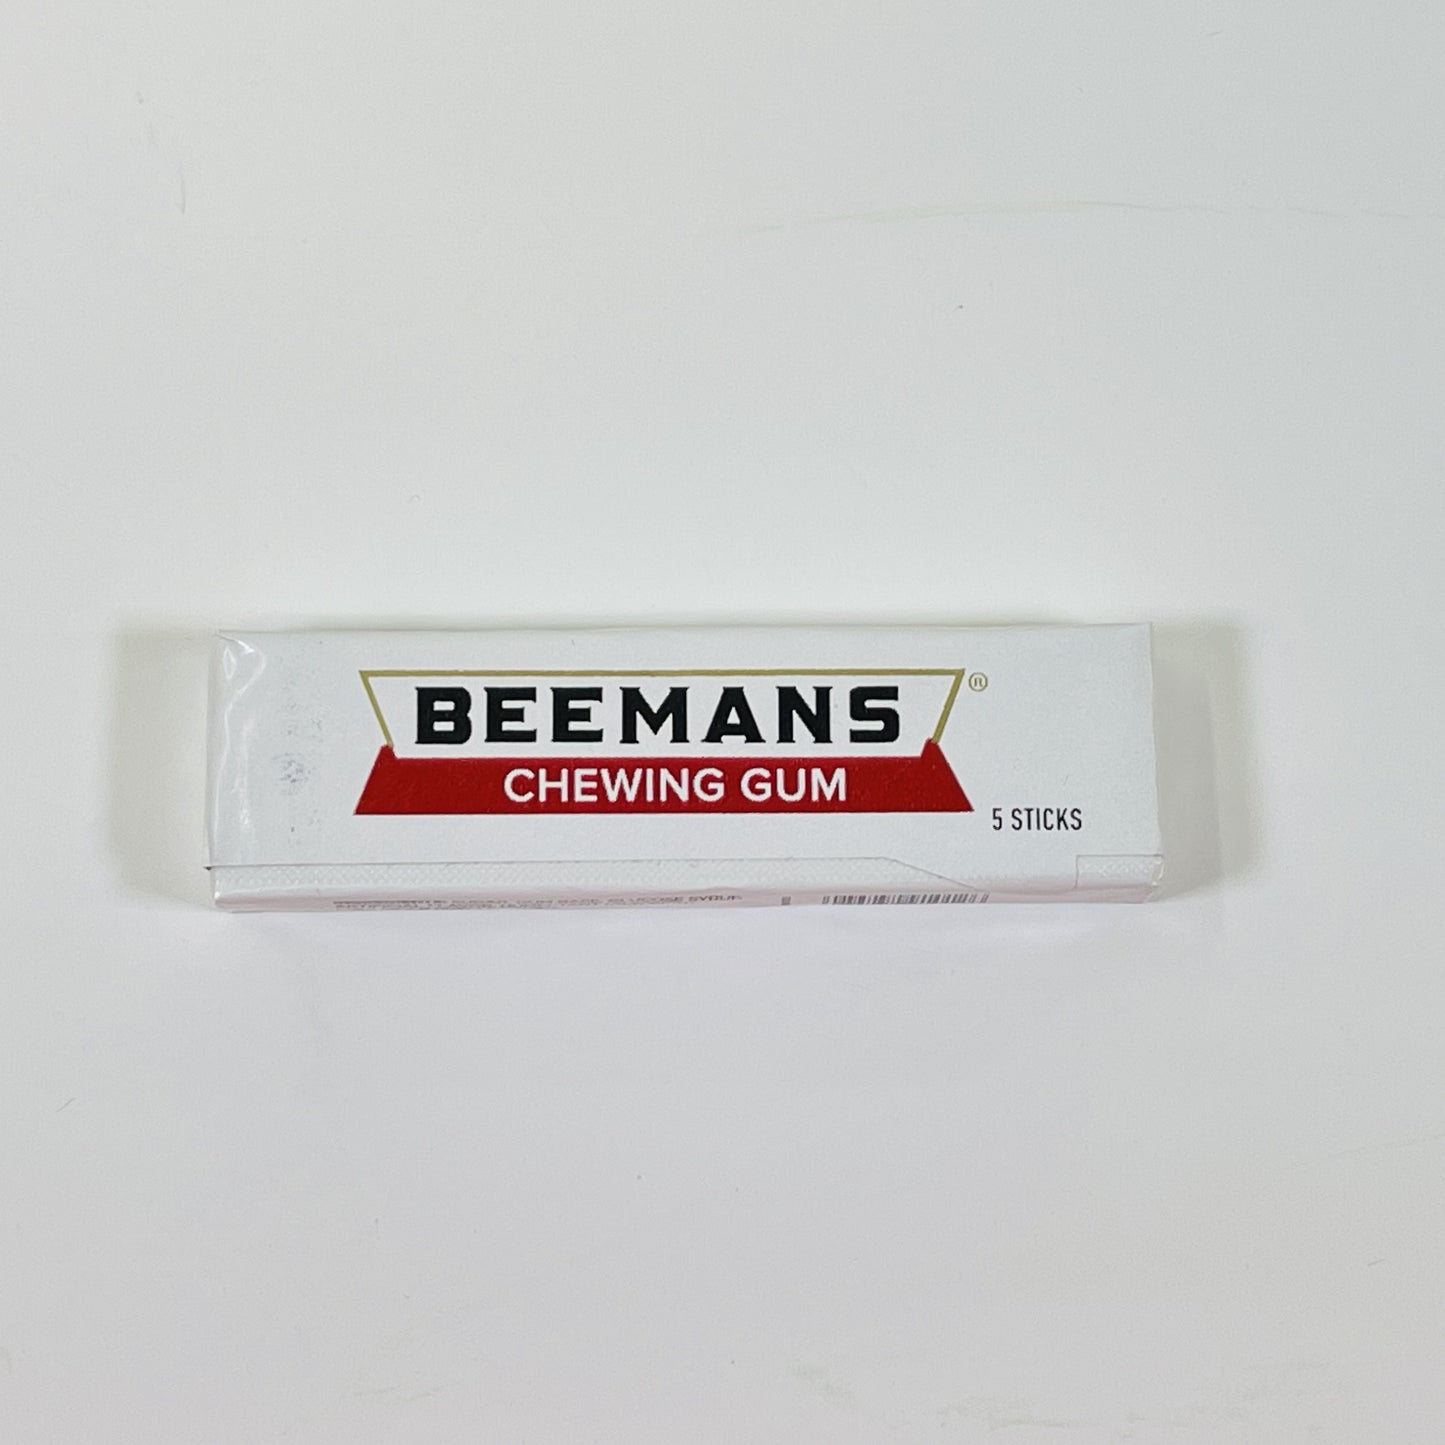 BEEMAN'S CHEWING GUM